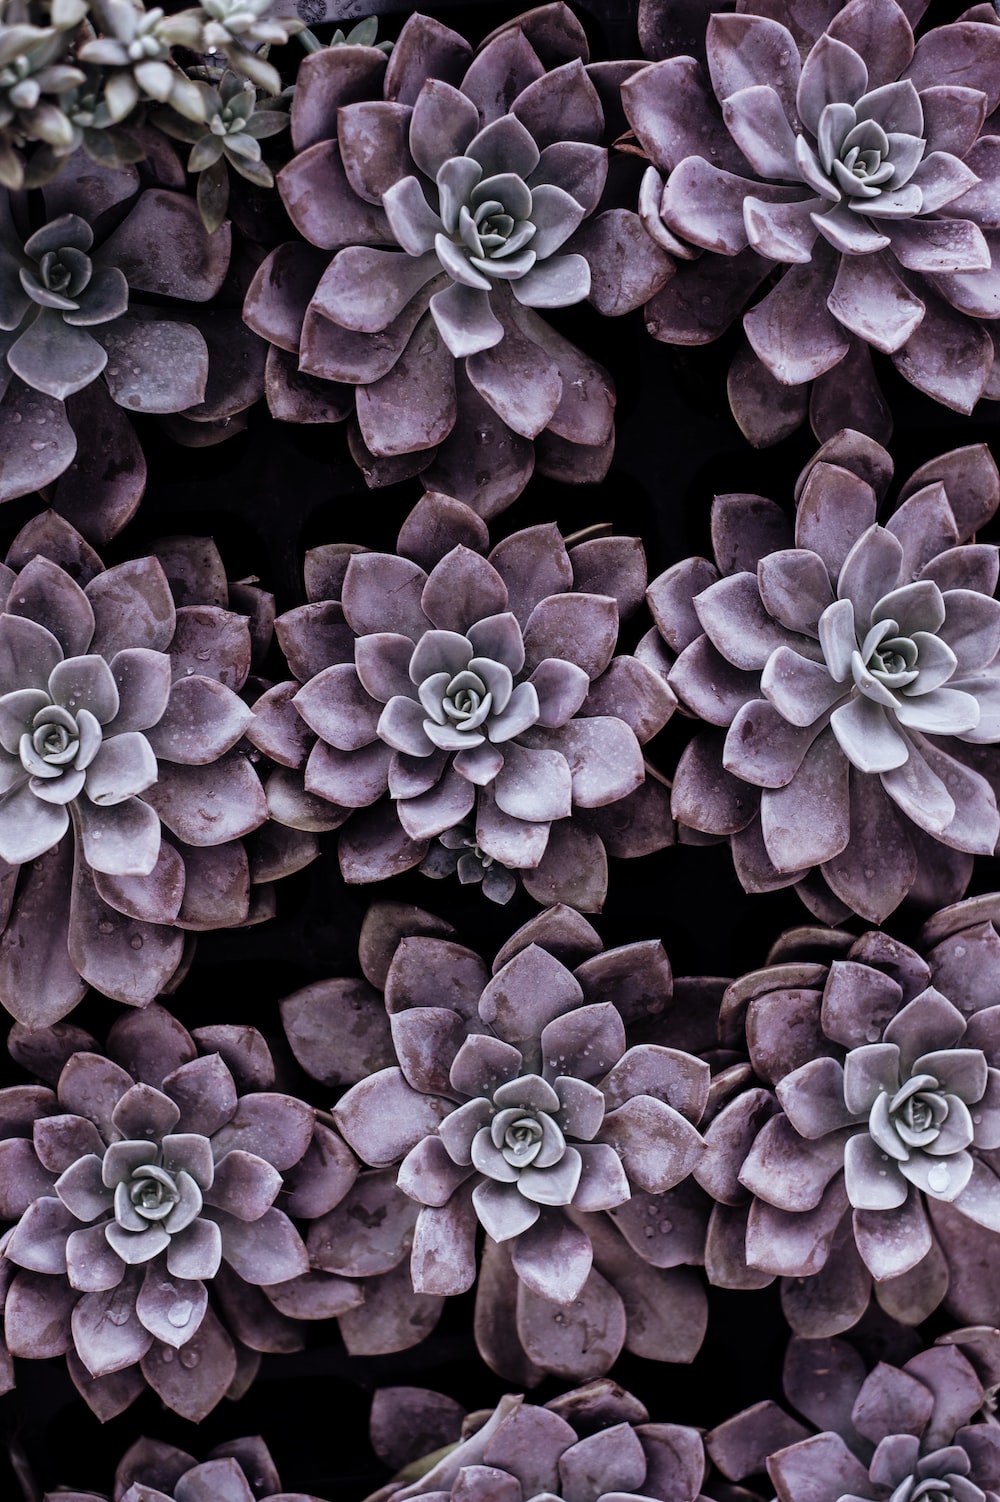 purple succulent plants photo Free Plant Image on